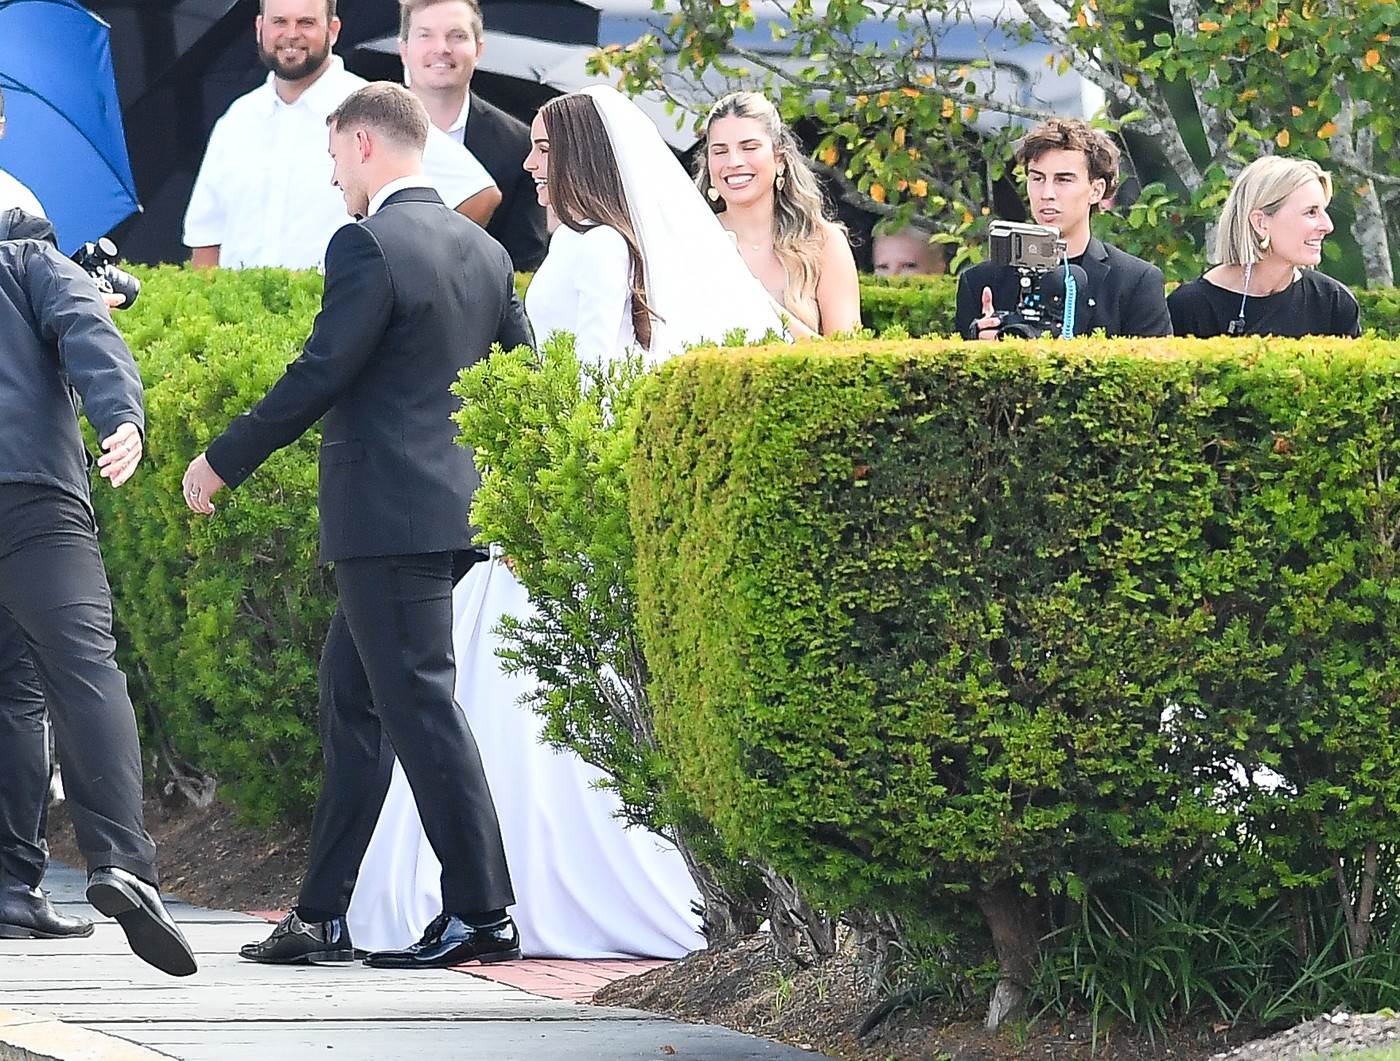  Olivija Kulpo se udala za NFL igrača Kristijana MeKafrija 